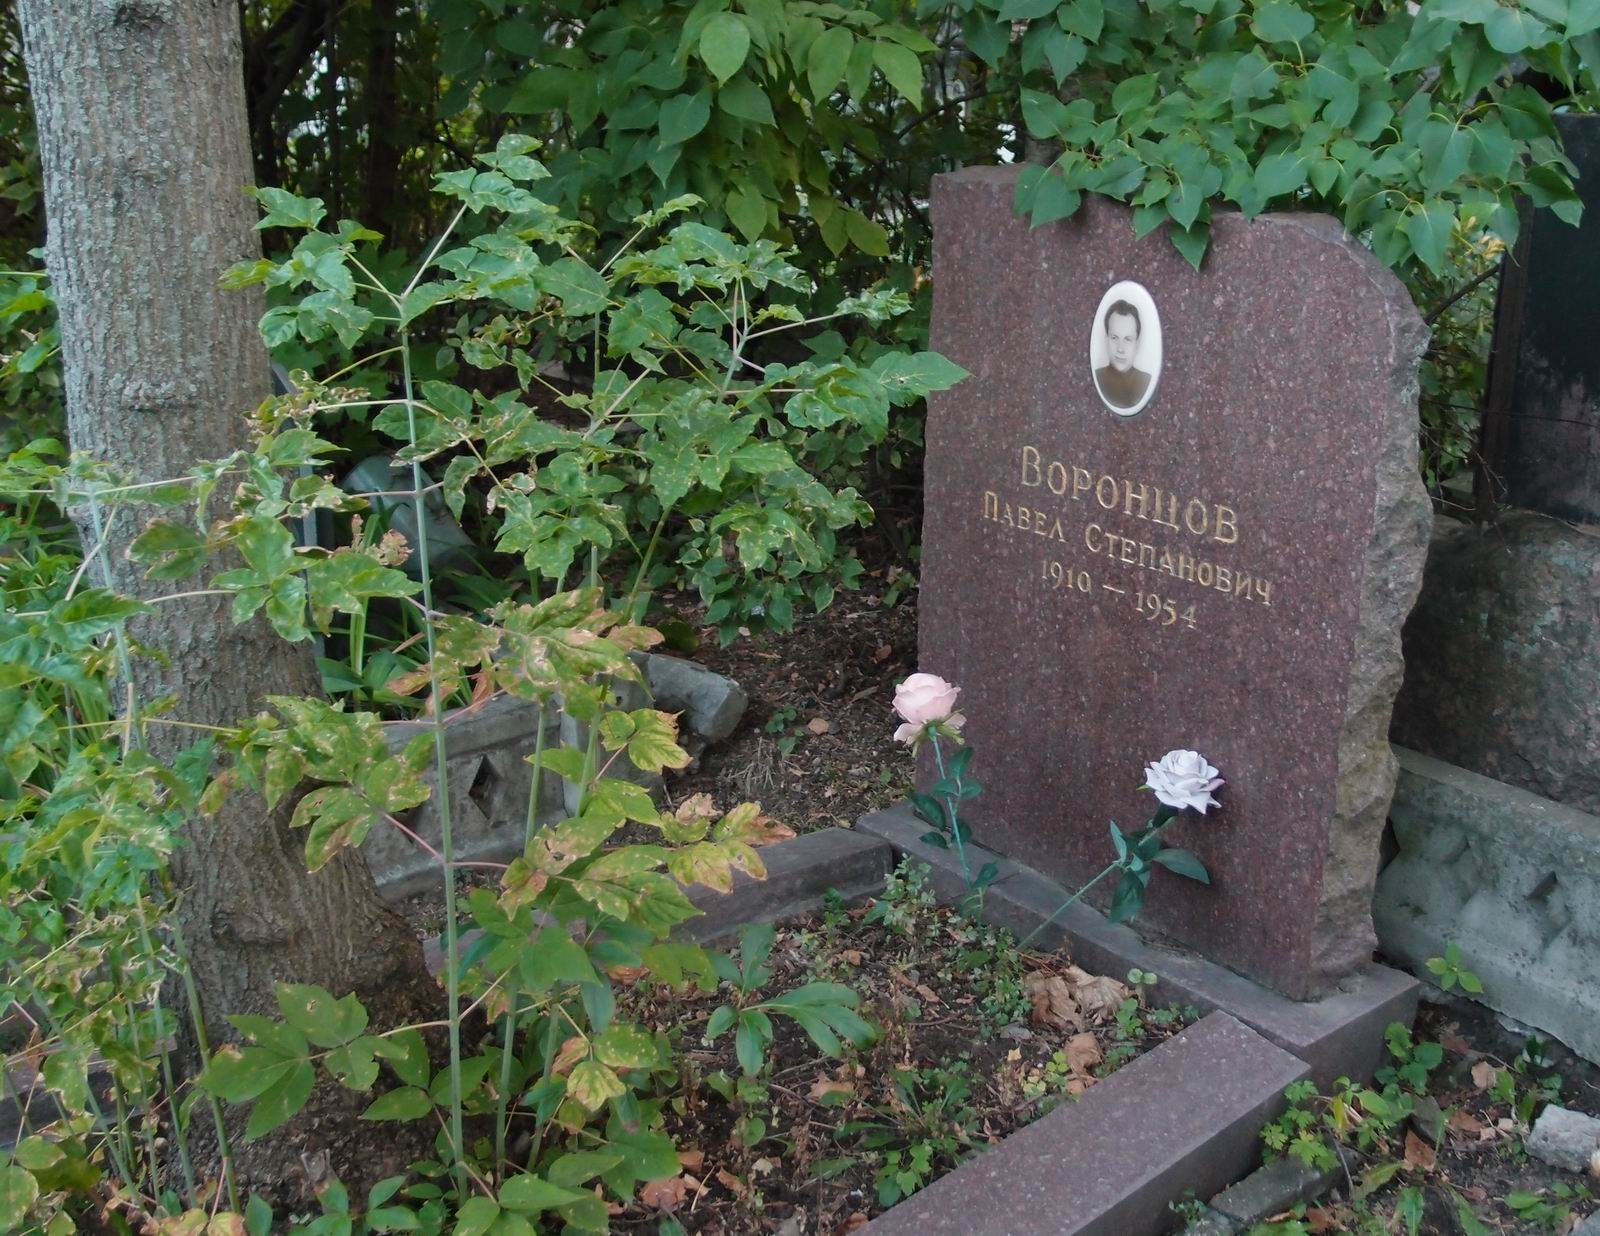 Памятник на могиле Воронцова П.С. (1910-1954), на Новодевичьем кладбище (2-41-17).